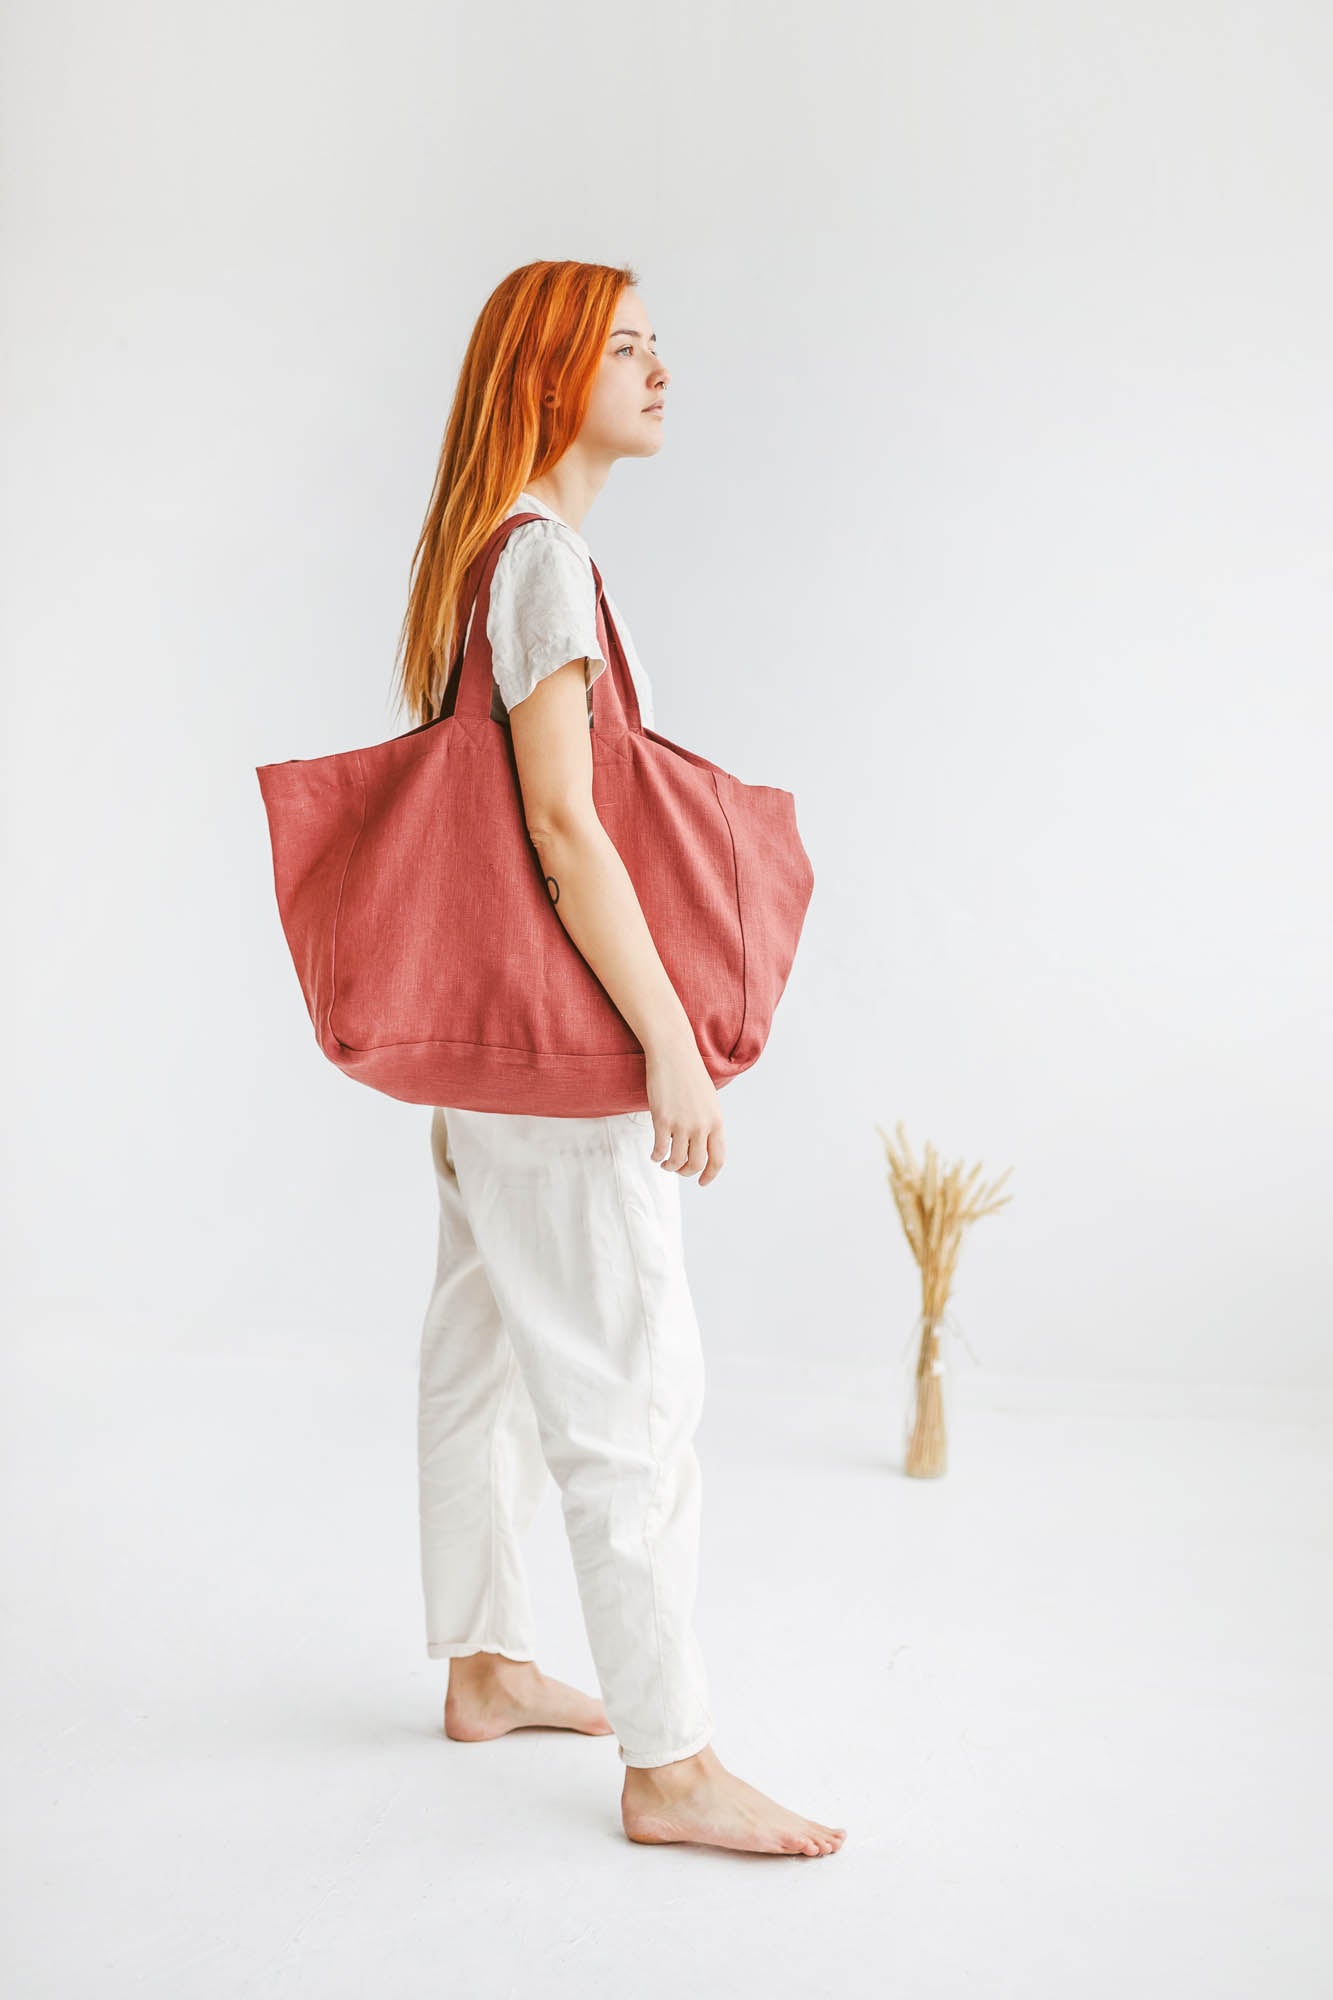 Terracotta linen beach bag